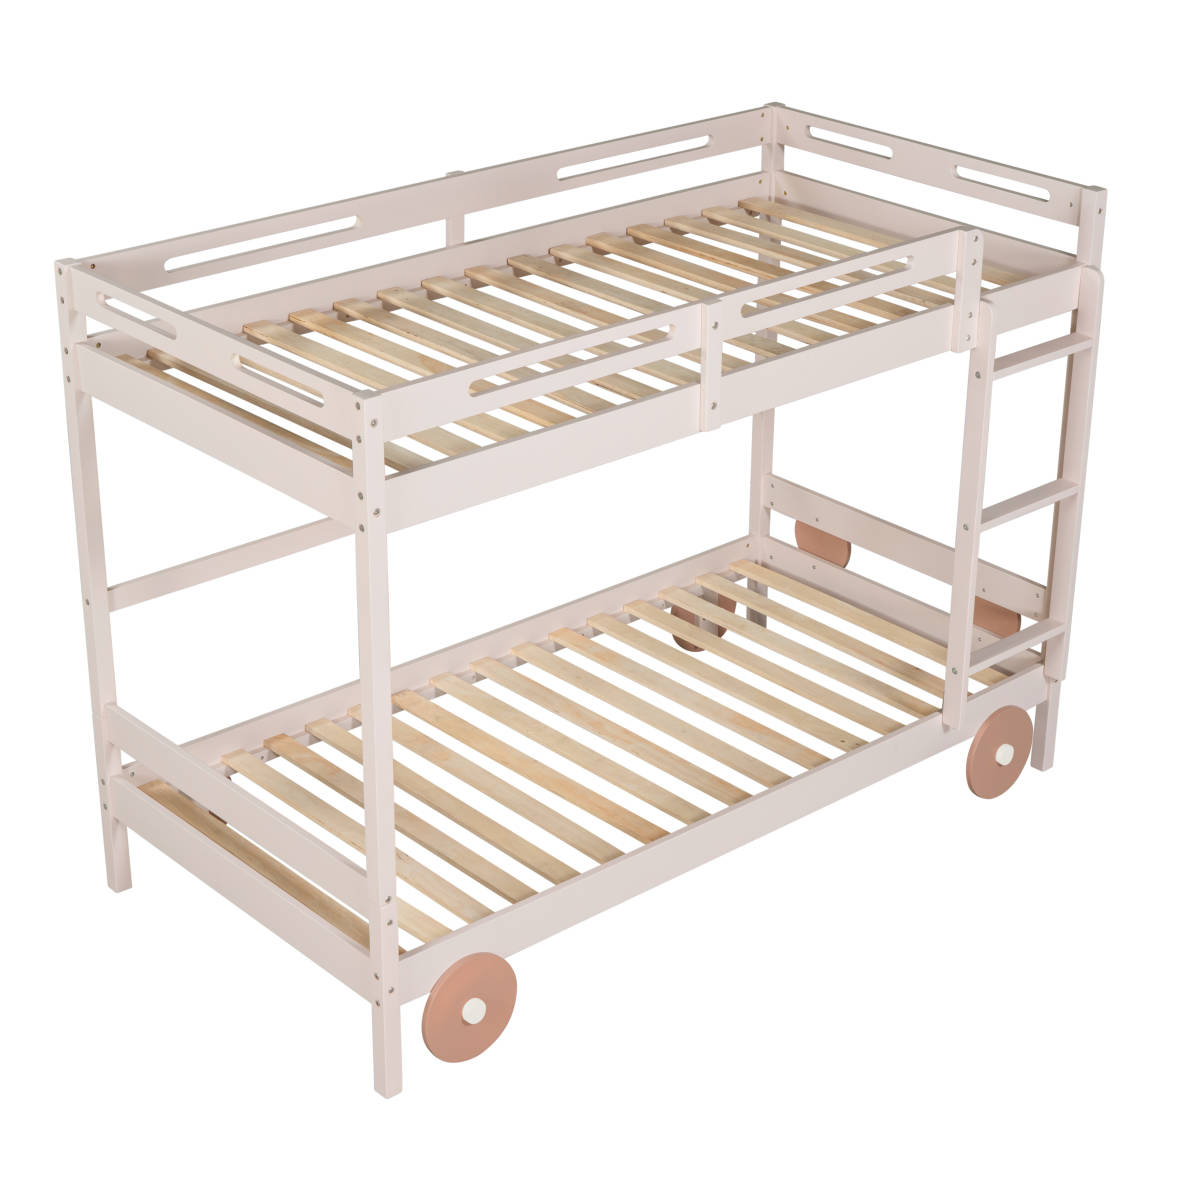 二段ベッド 可愛らしい車のデザイン 子供/大人用 ベッド ロータイプ すのこ 木製ベッド パイン材 社員寮 学生寮